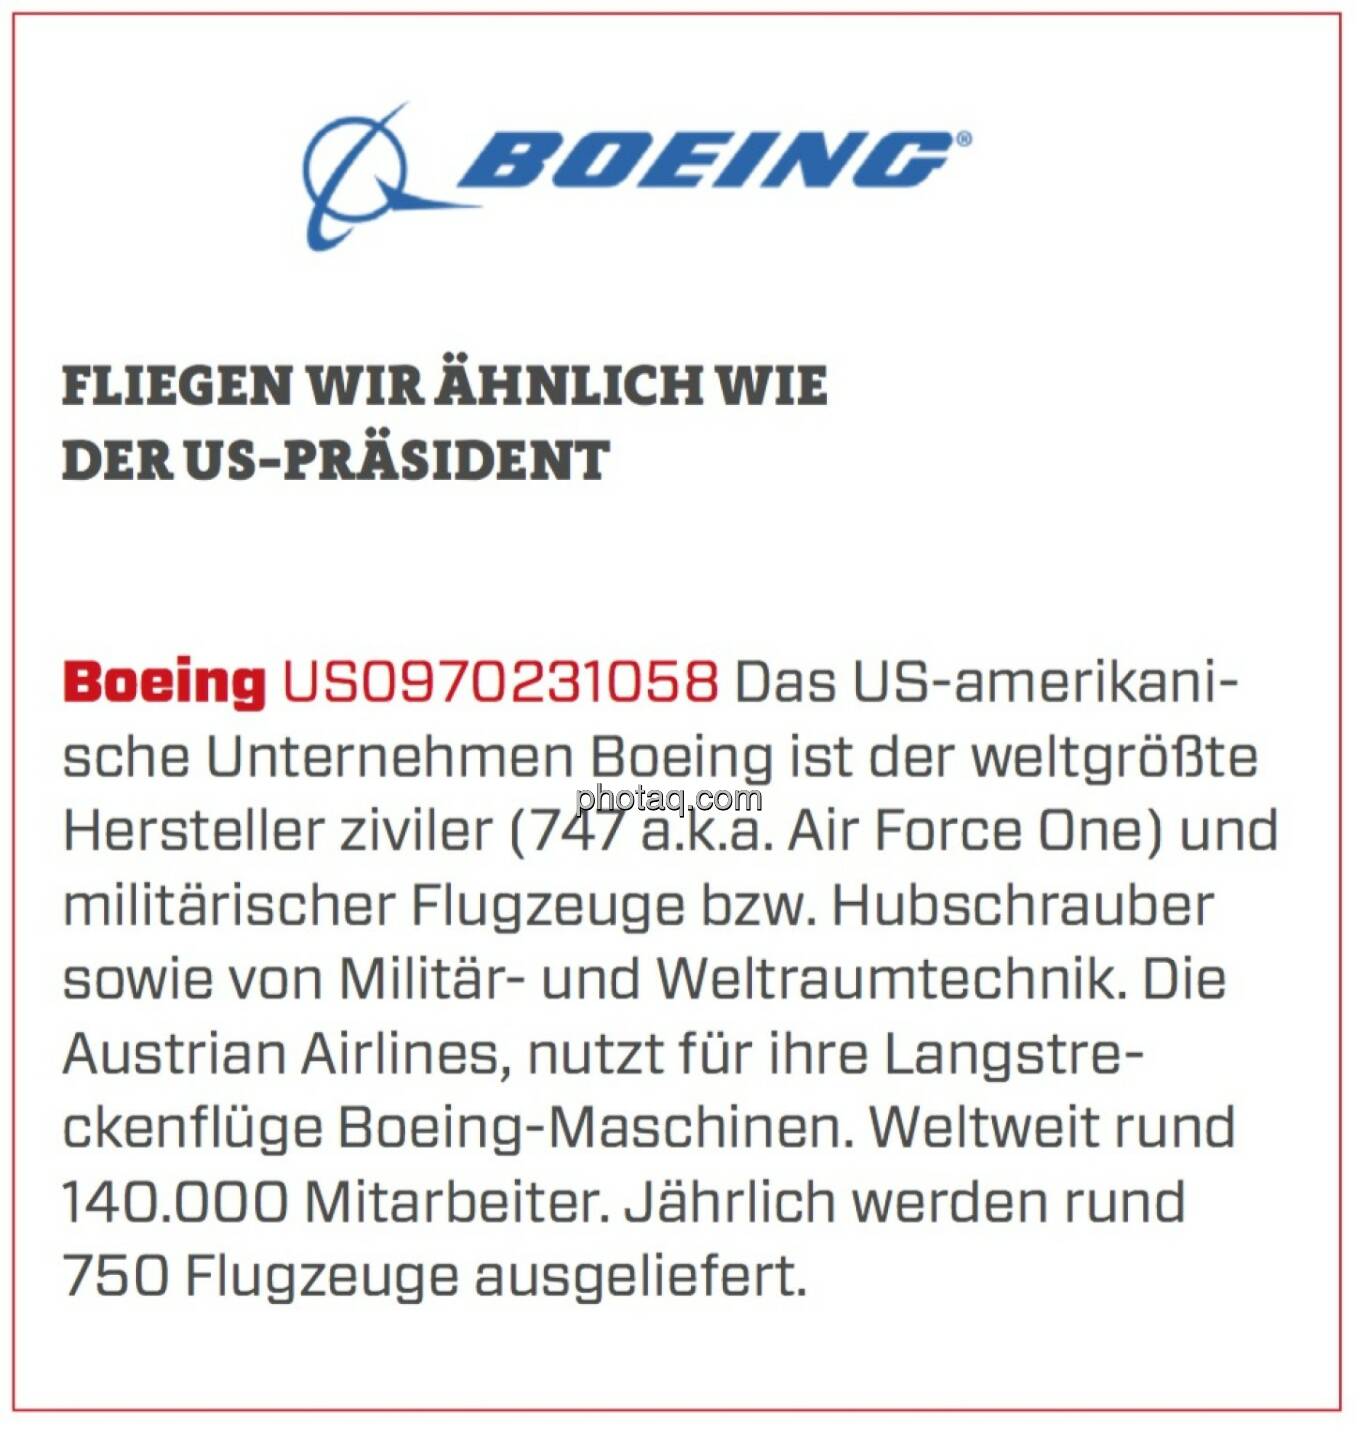 Boeing - Fliegen wir ähnlich wie der US-Präsident: Das US-amerikanische Unternehmen Boeing ist der weltgrößte Hersteller ziviler (747 a.k.a. Air Force One) und militärischer Flugzeuge bzw. Hubschrauber sowie von Militär- und Weltraumtechnik. Die Austrian Airlines, nutzt für ihre Langstreckenflüge Boeing-Maschinen. Weltweit rund 140.000 Mitarbeiter. Jährlich werden rund 750 Flugzeuge ausgeliefert.